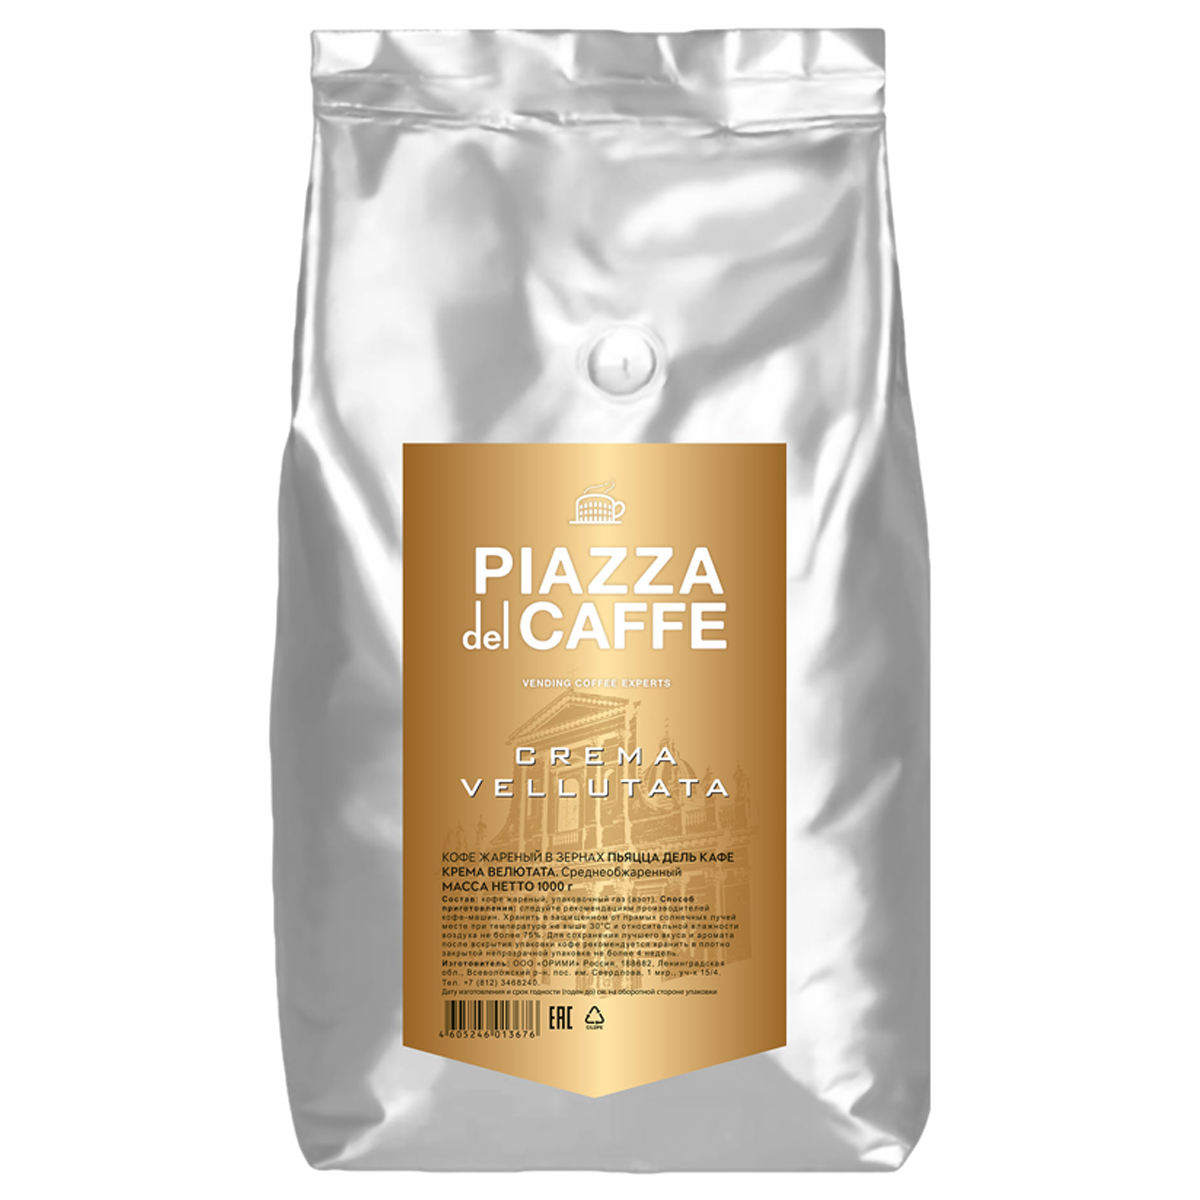 Кофе в зернах Piazza del caffe "Crema Vellutata", вакуумный пакет, 1кг 1367-06-0